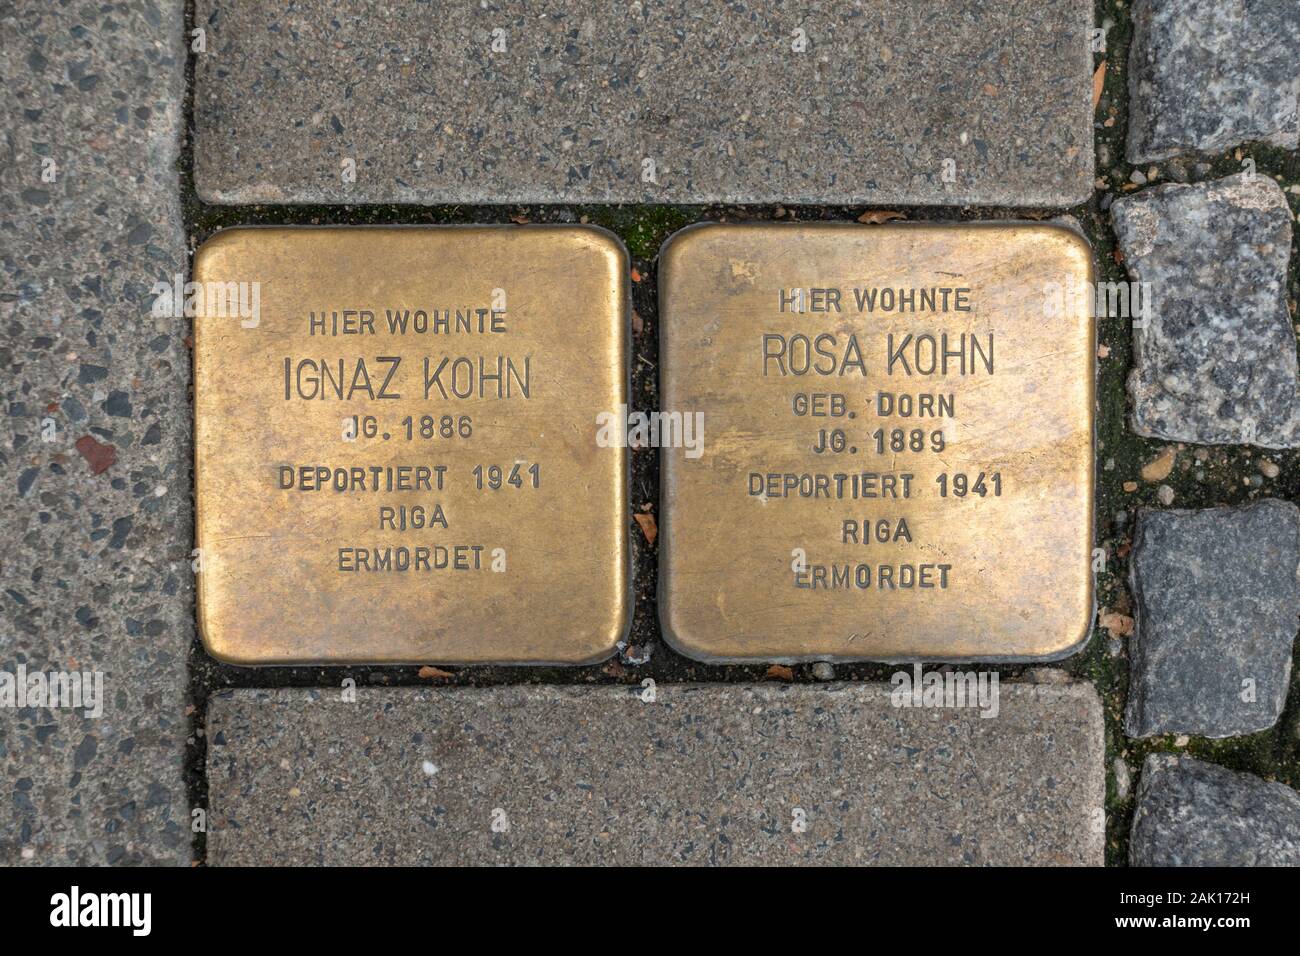 Pietre da burlatura segnapunti commemorativi dell'Olocausto per Ignaz Kohn e Rosa Kohn a Coburg, Baviera, Germania. Foto Stock